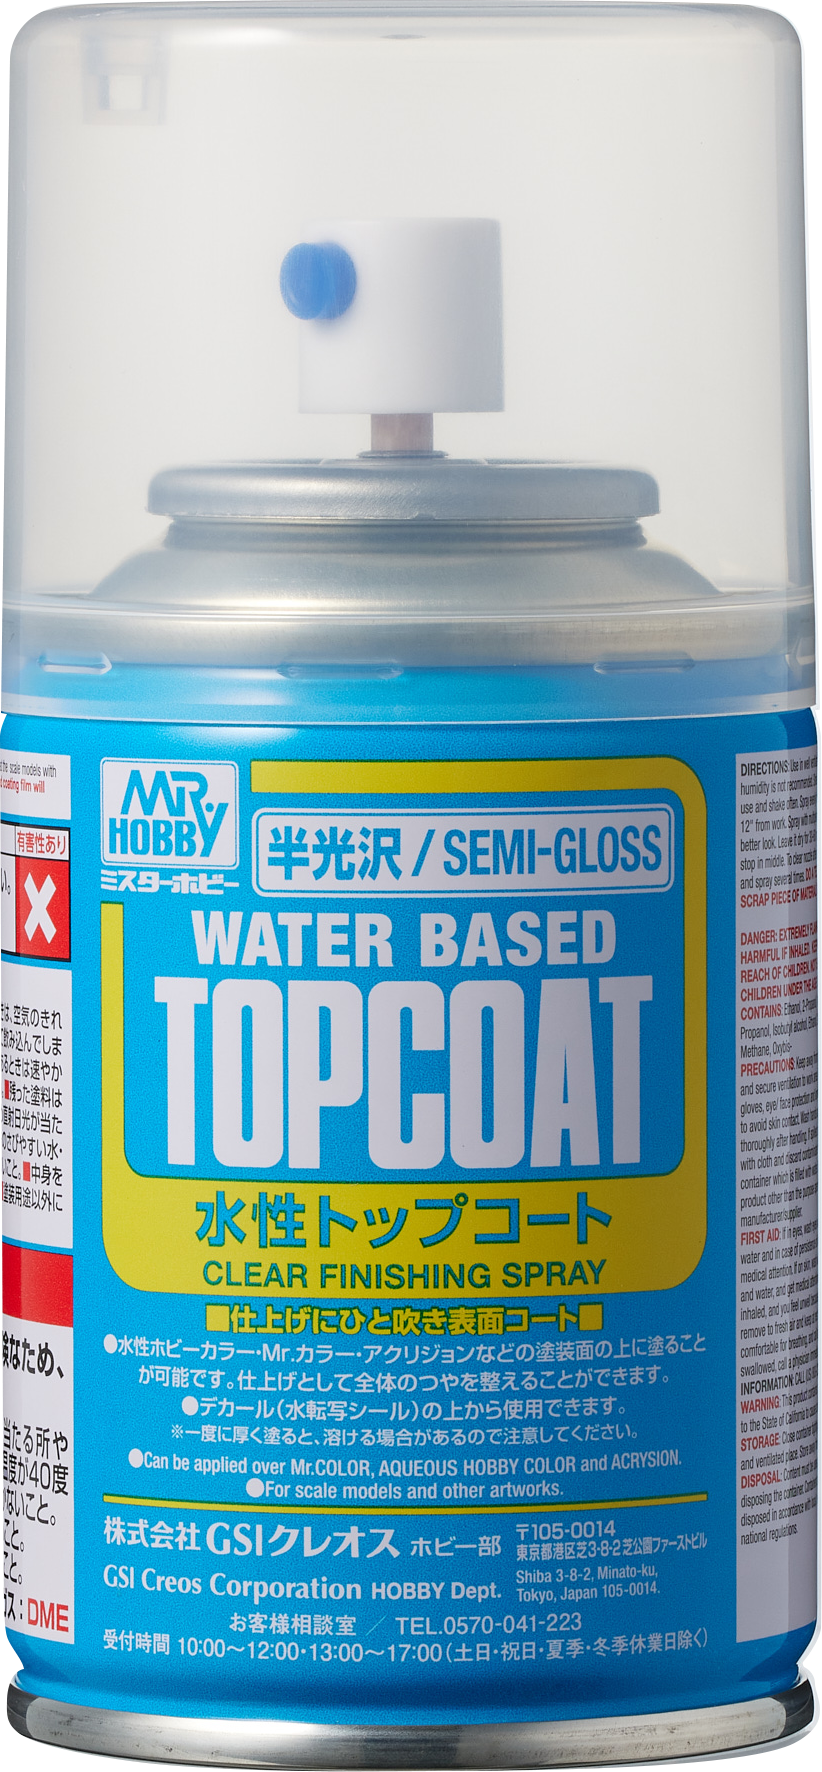 B502: Mr Top Coat Semi-Gloss